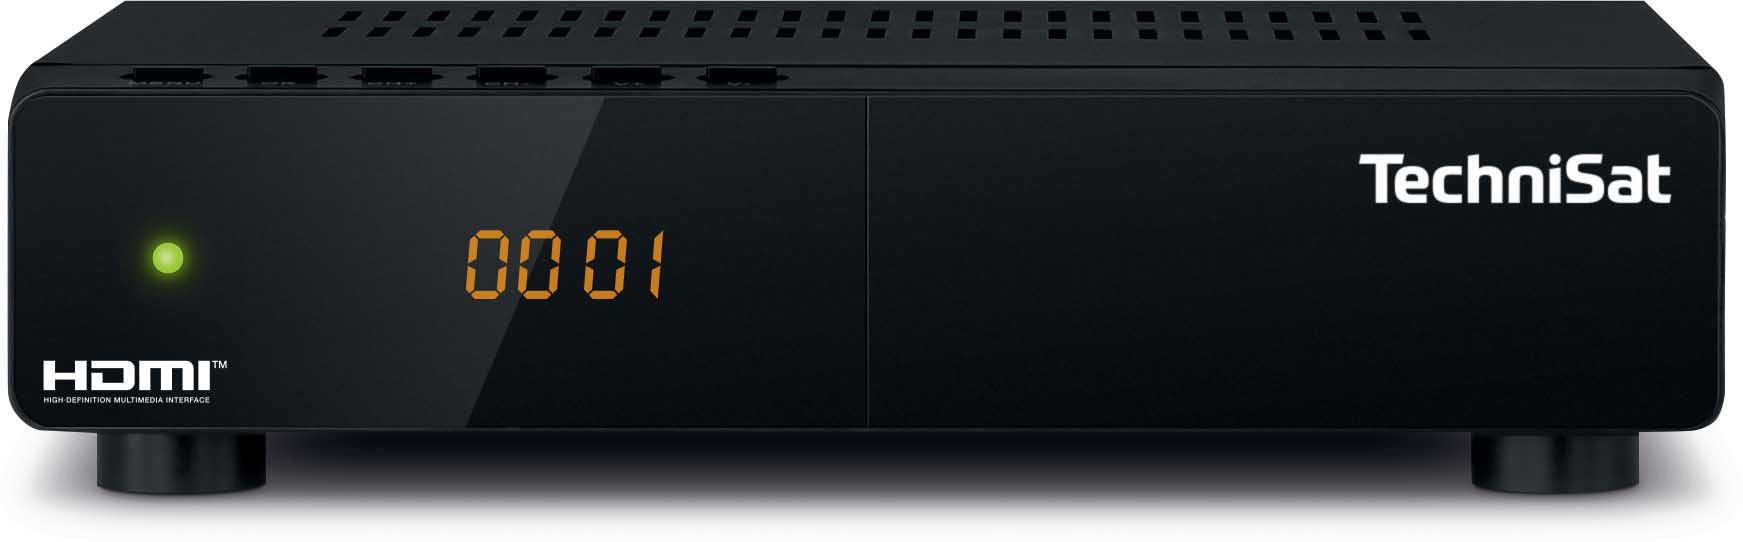 HDTV-Receiver TECHNISAT DVB-S2, HD-S Schwarz) (HDTV, 261 DVB-S,